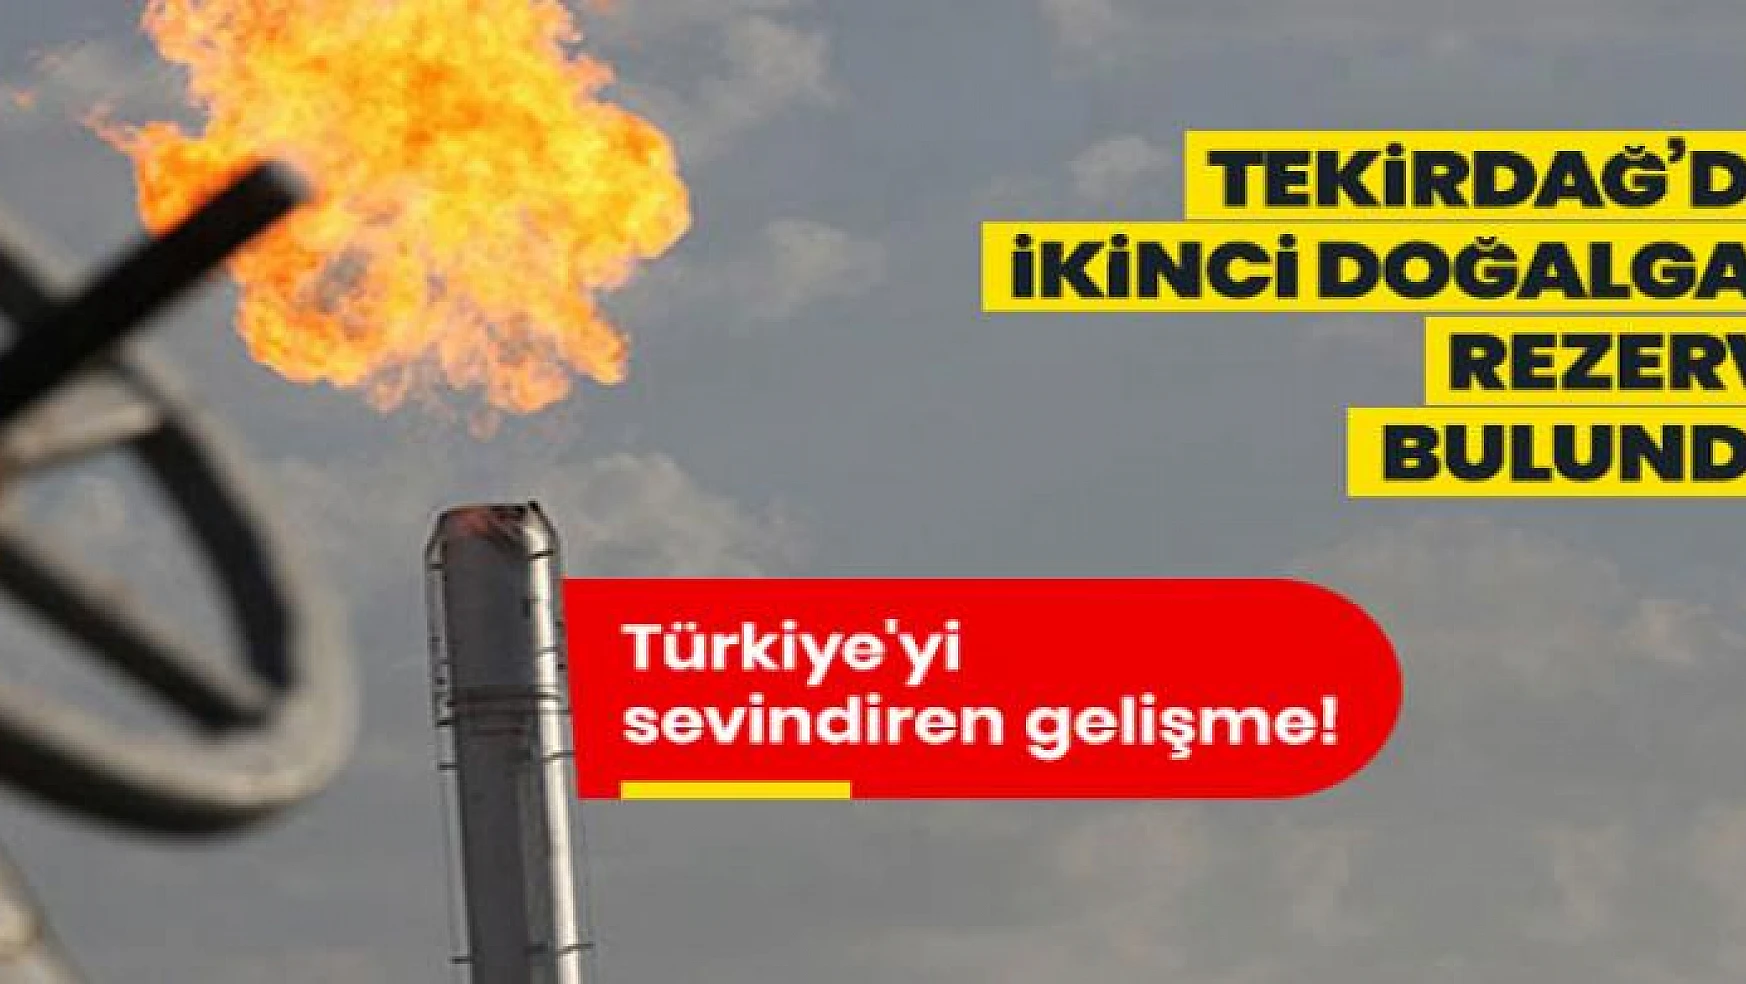 Türkiye'yi sevindiren gelişme! Tekirdağ'da ikinci doğalgaz rezervi bulundu